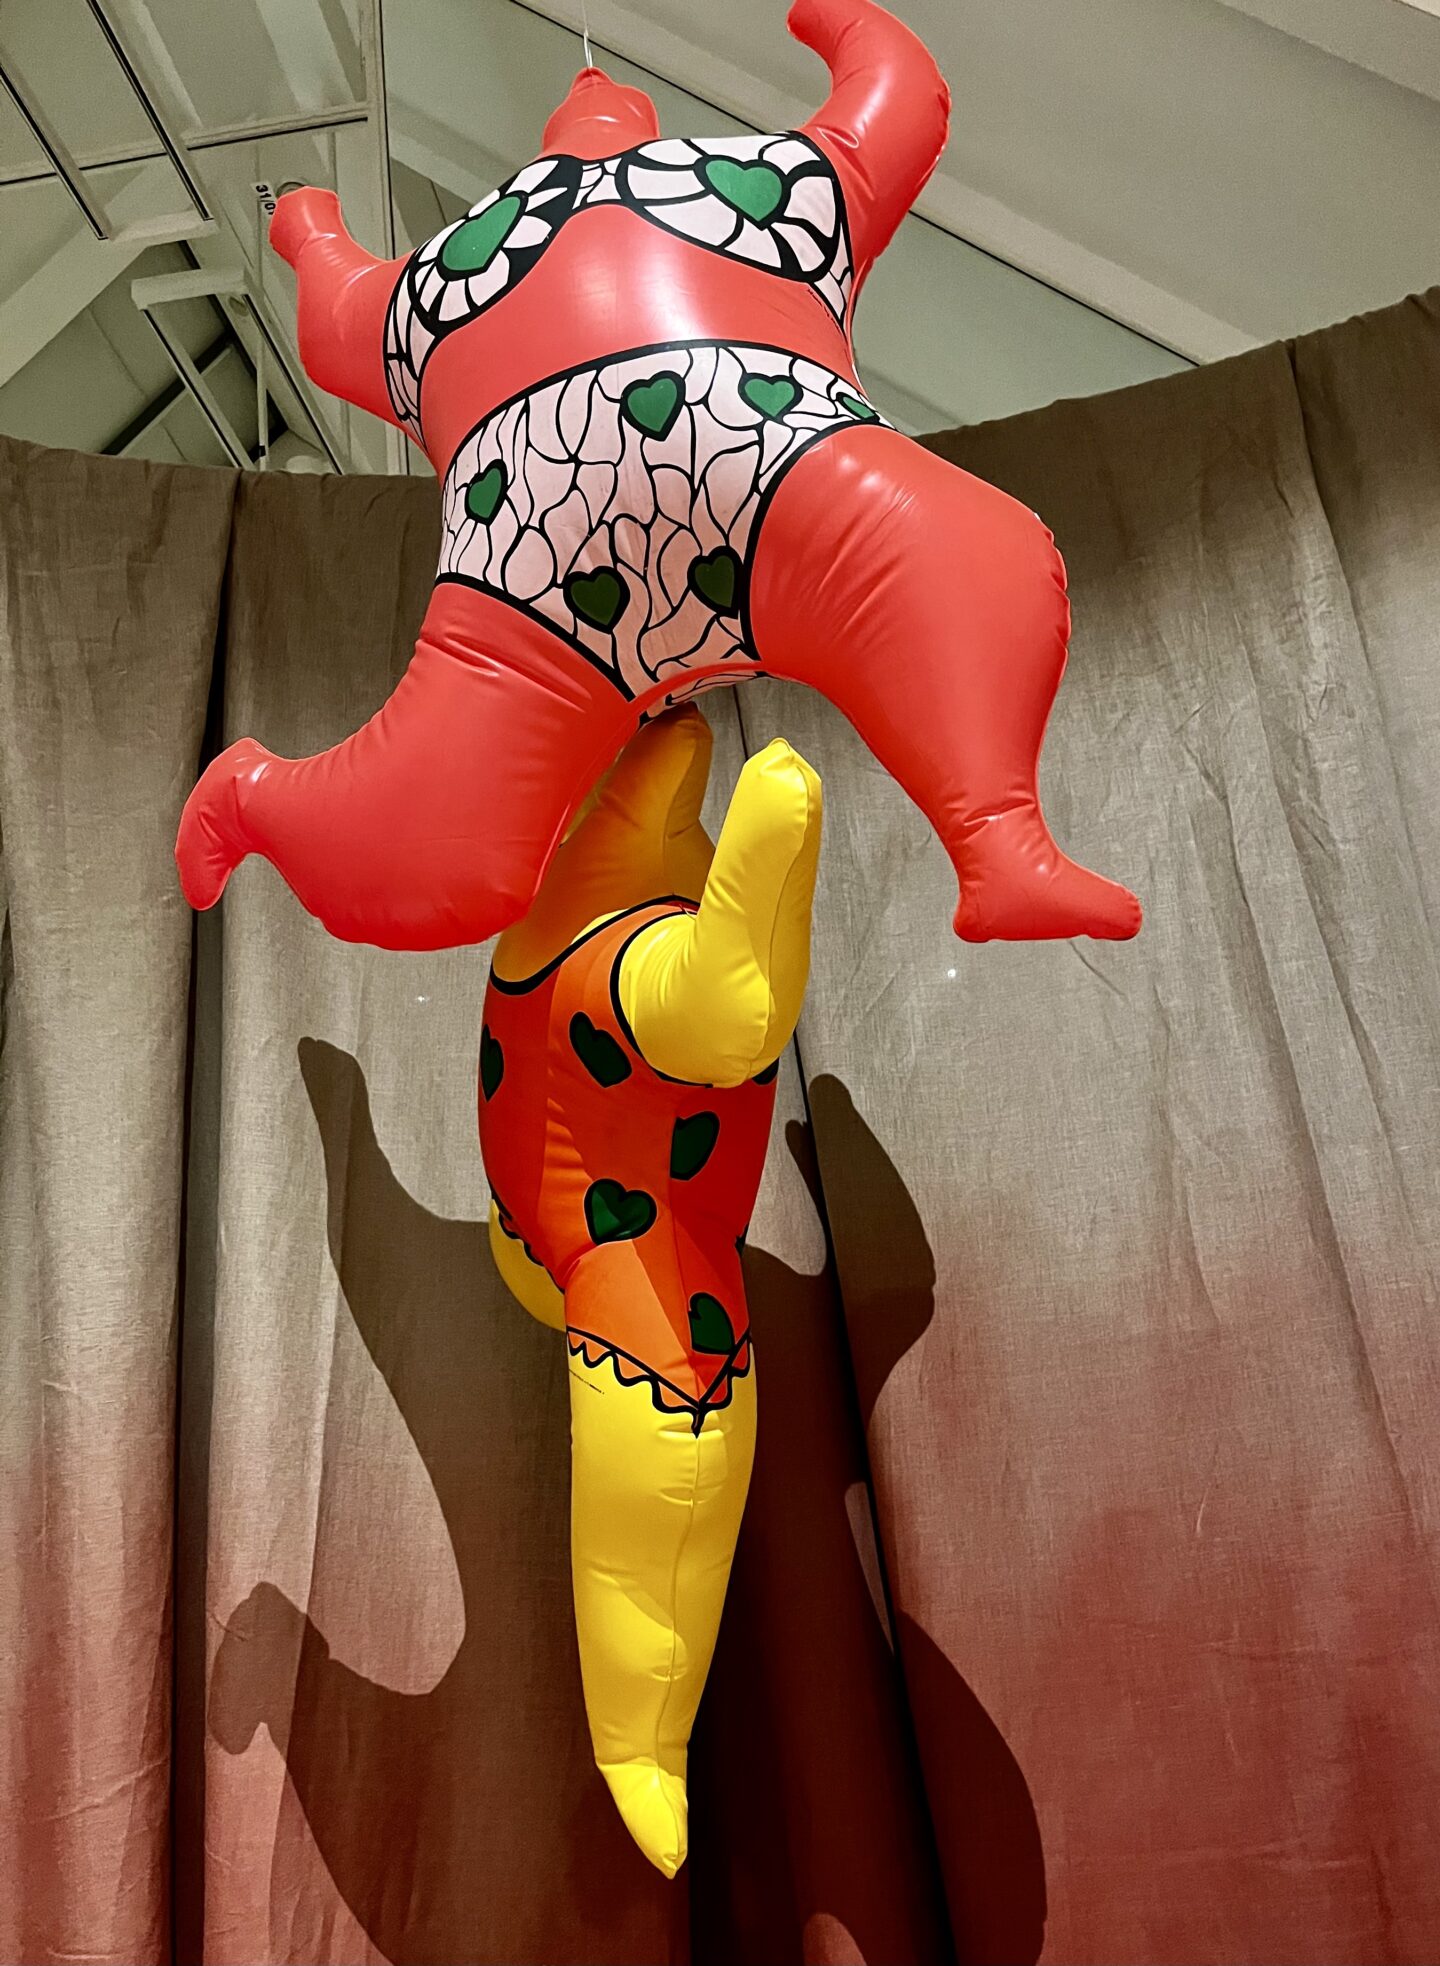 Nana zum Aufblasen, Niki de Saint Phalle, Plastic World, die aktuelle Ausstellung in der Schirn